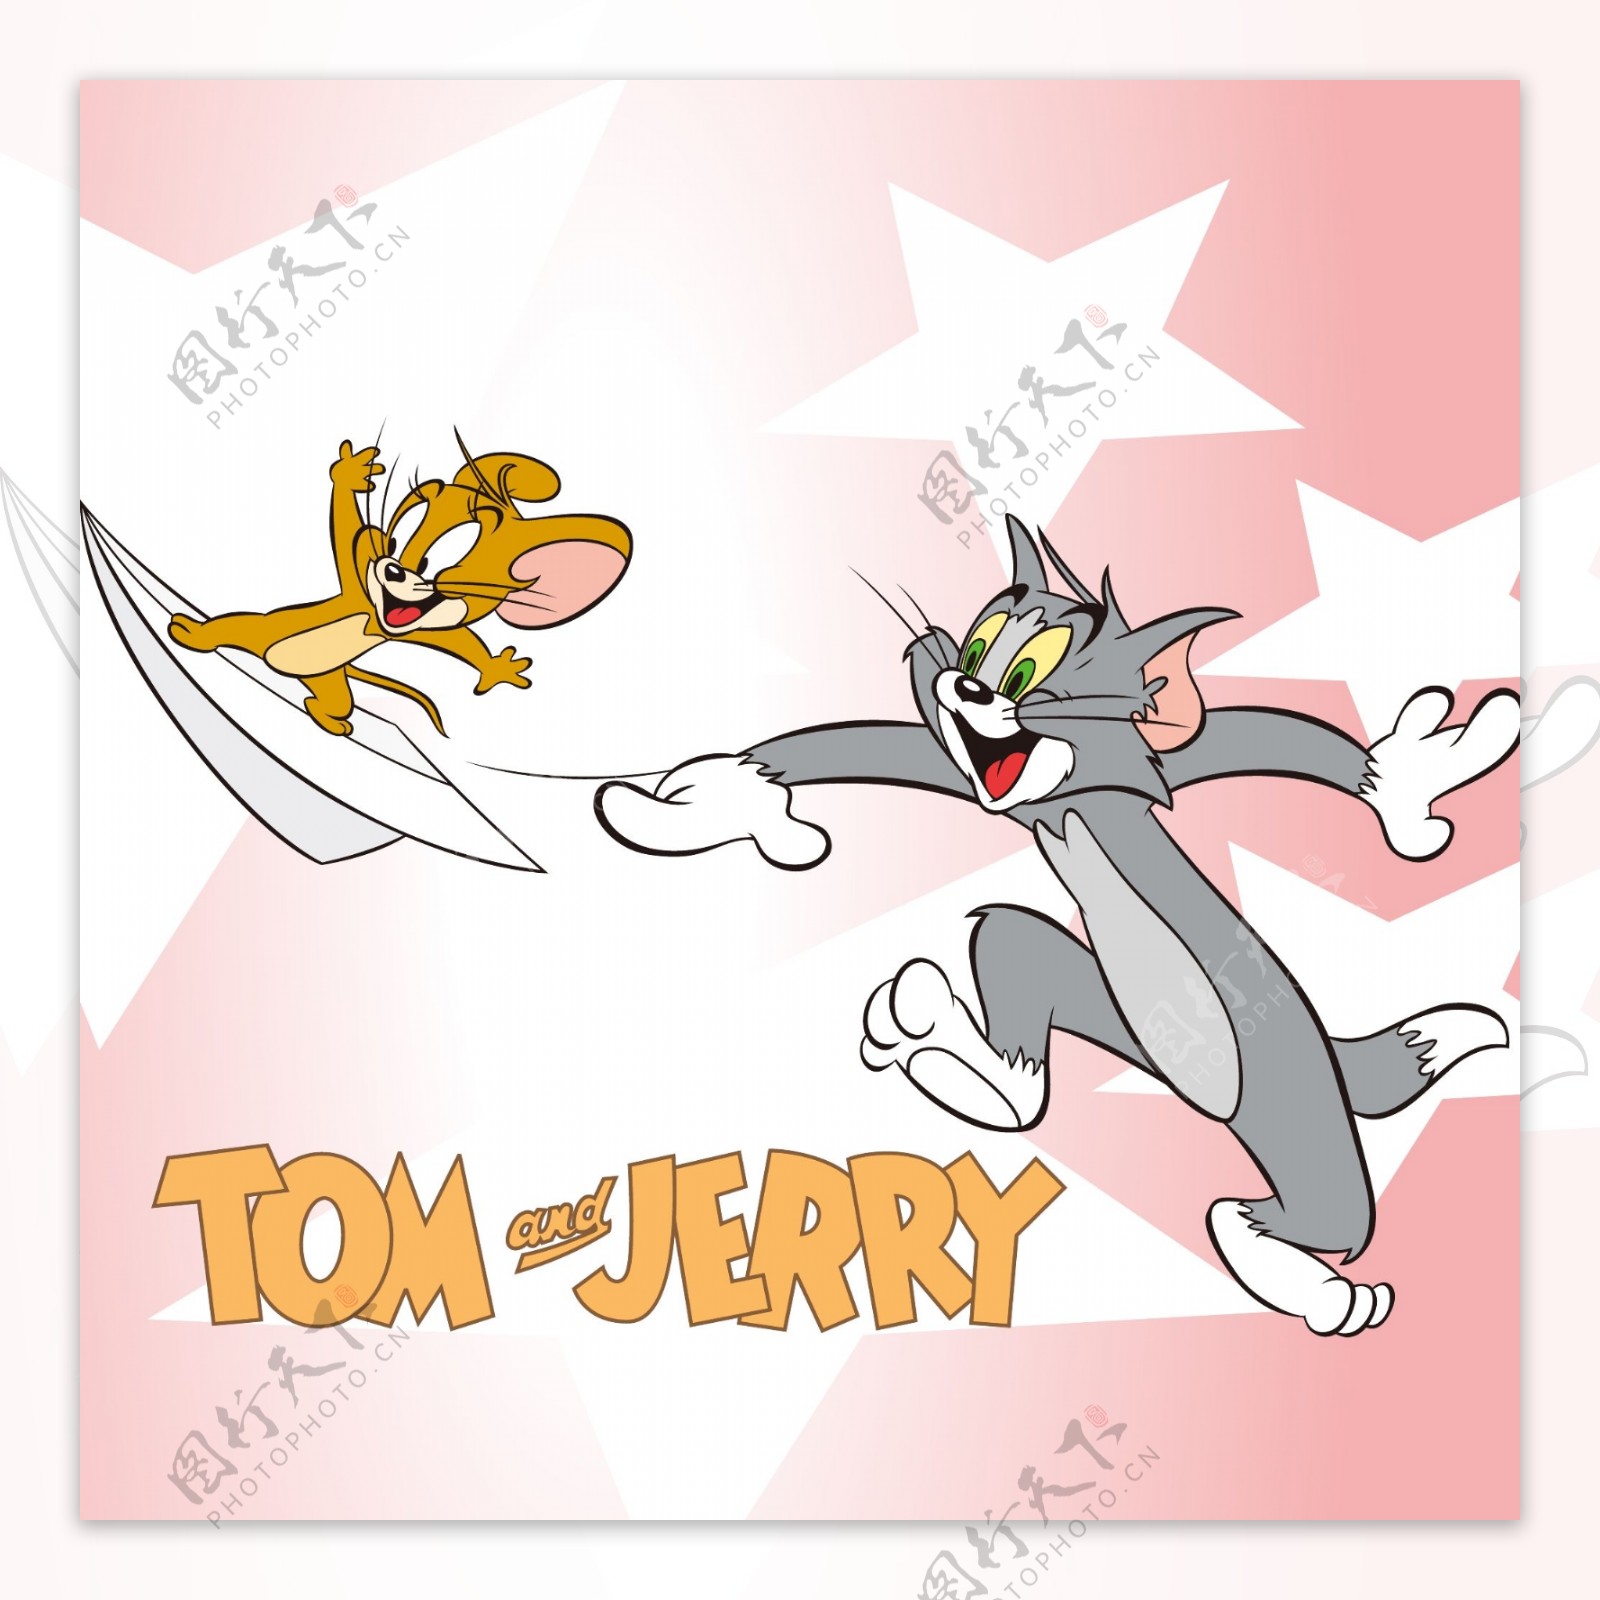 印花矢量图可爱卡通卡通形象猫和老鼠纸飞机免费素材